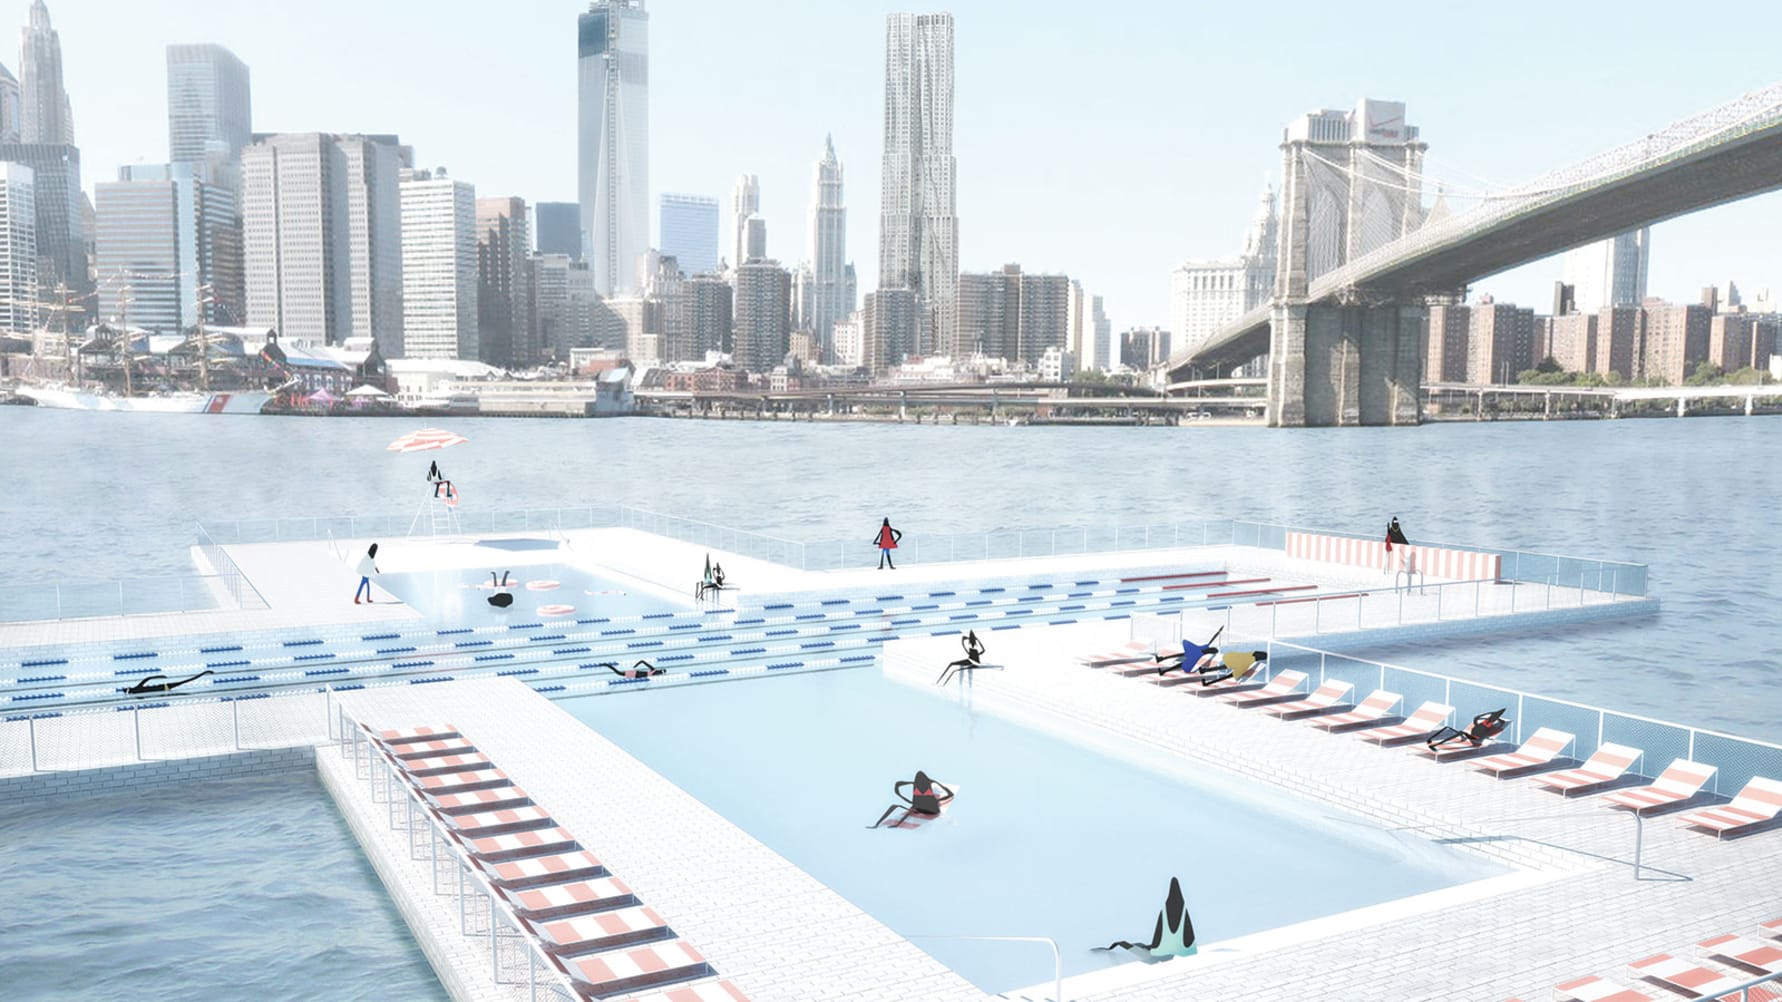 +Pool, logran diseñar una piscina flotante en el East River de Nueva York